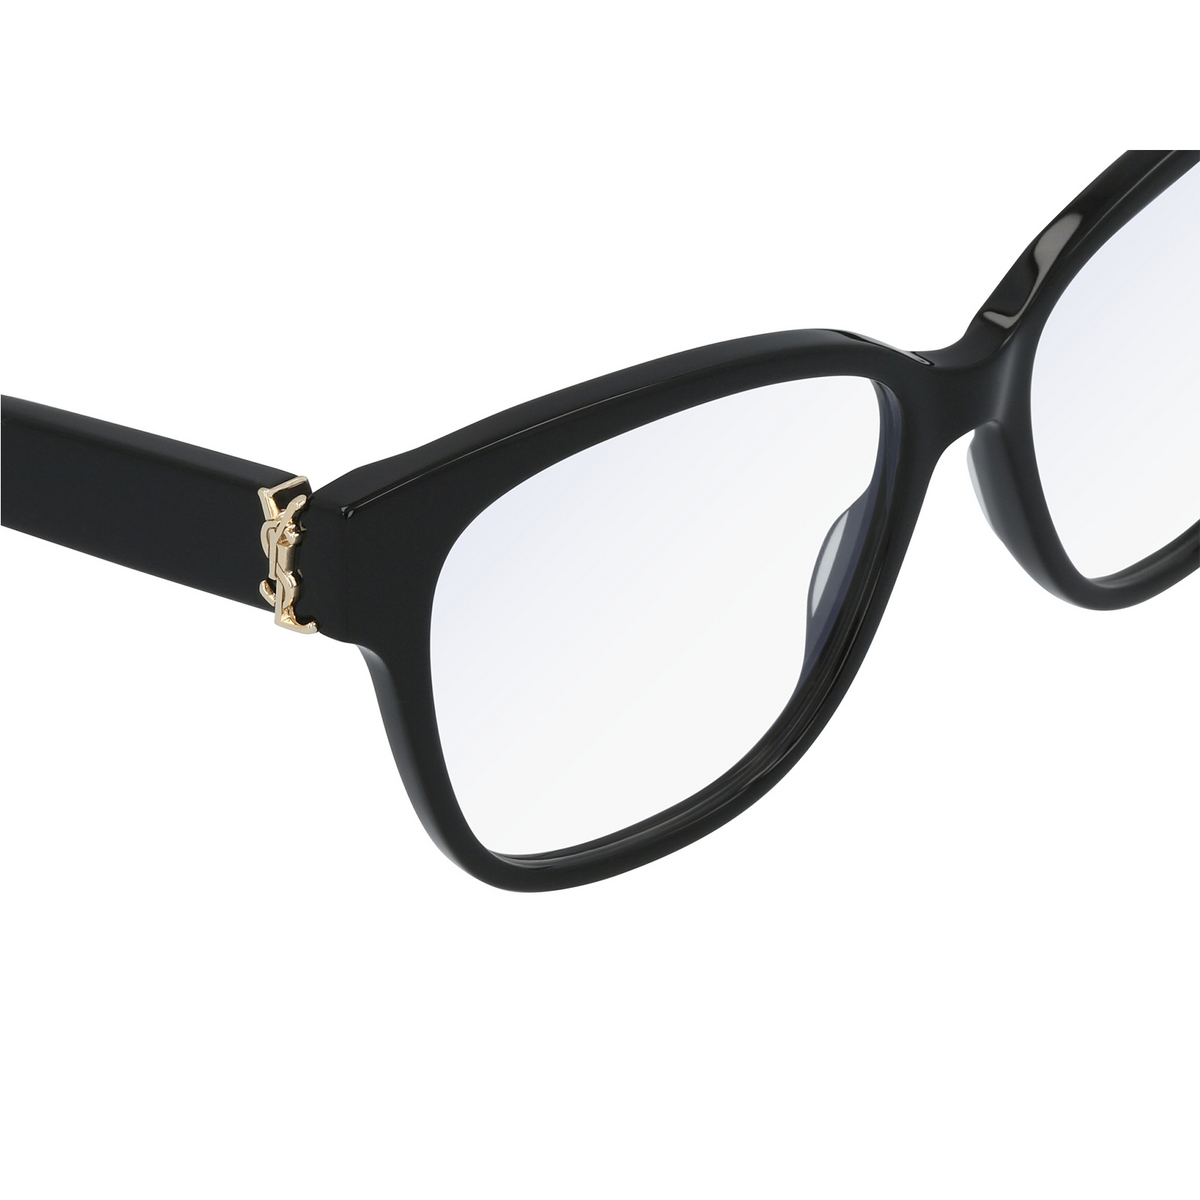 Saint Laurent® Square Eyeglasses: SL M33 color Black 003 - 3/3.